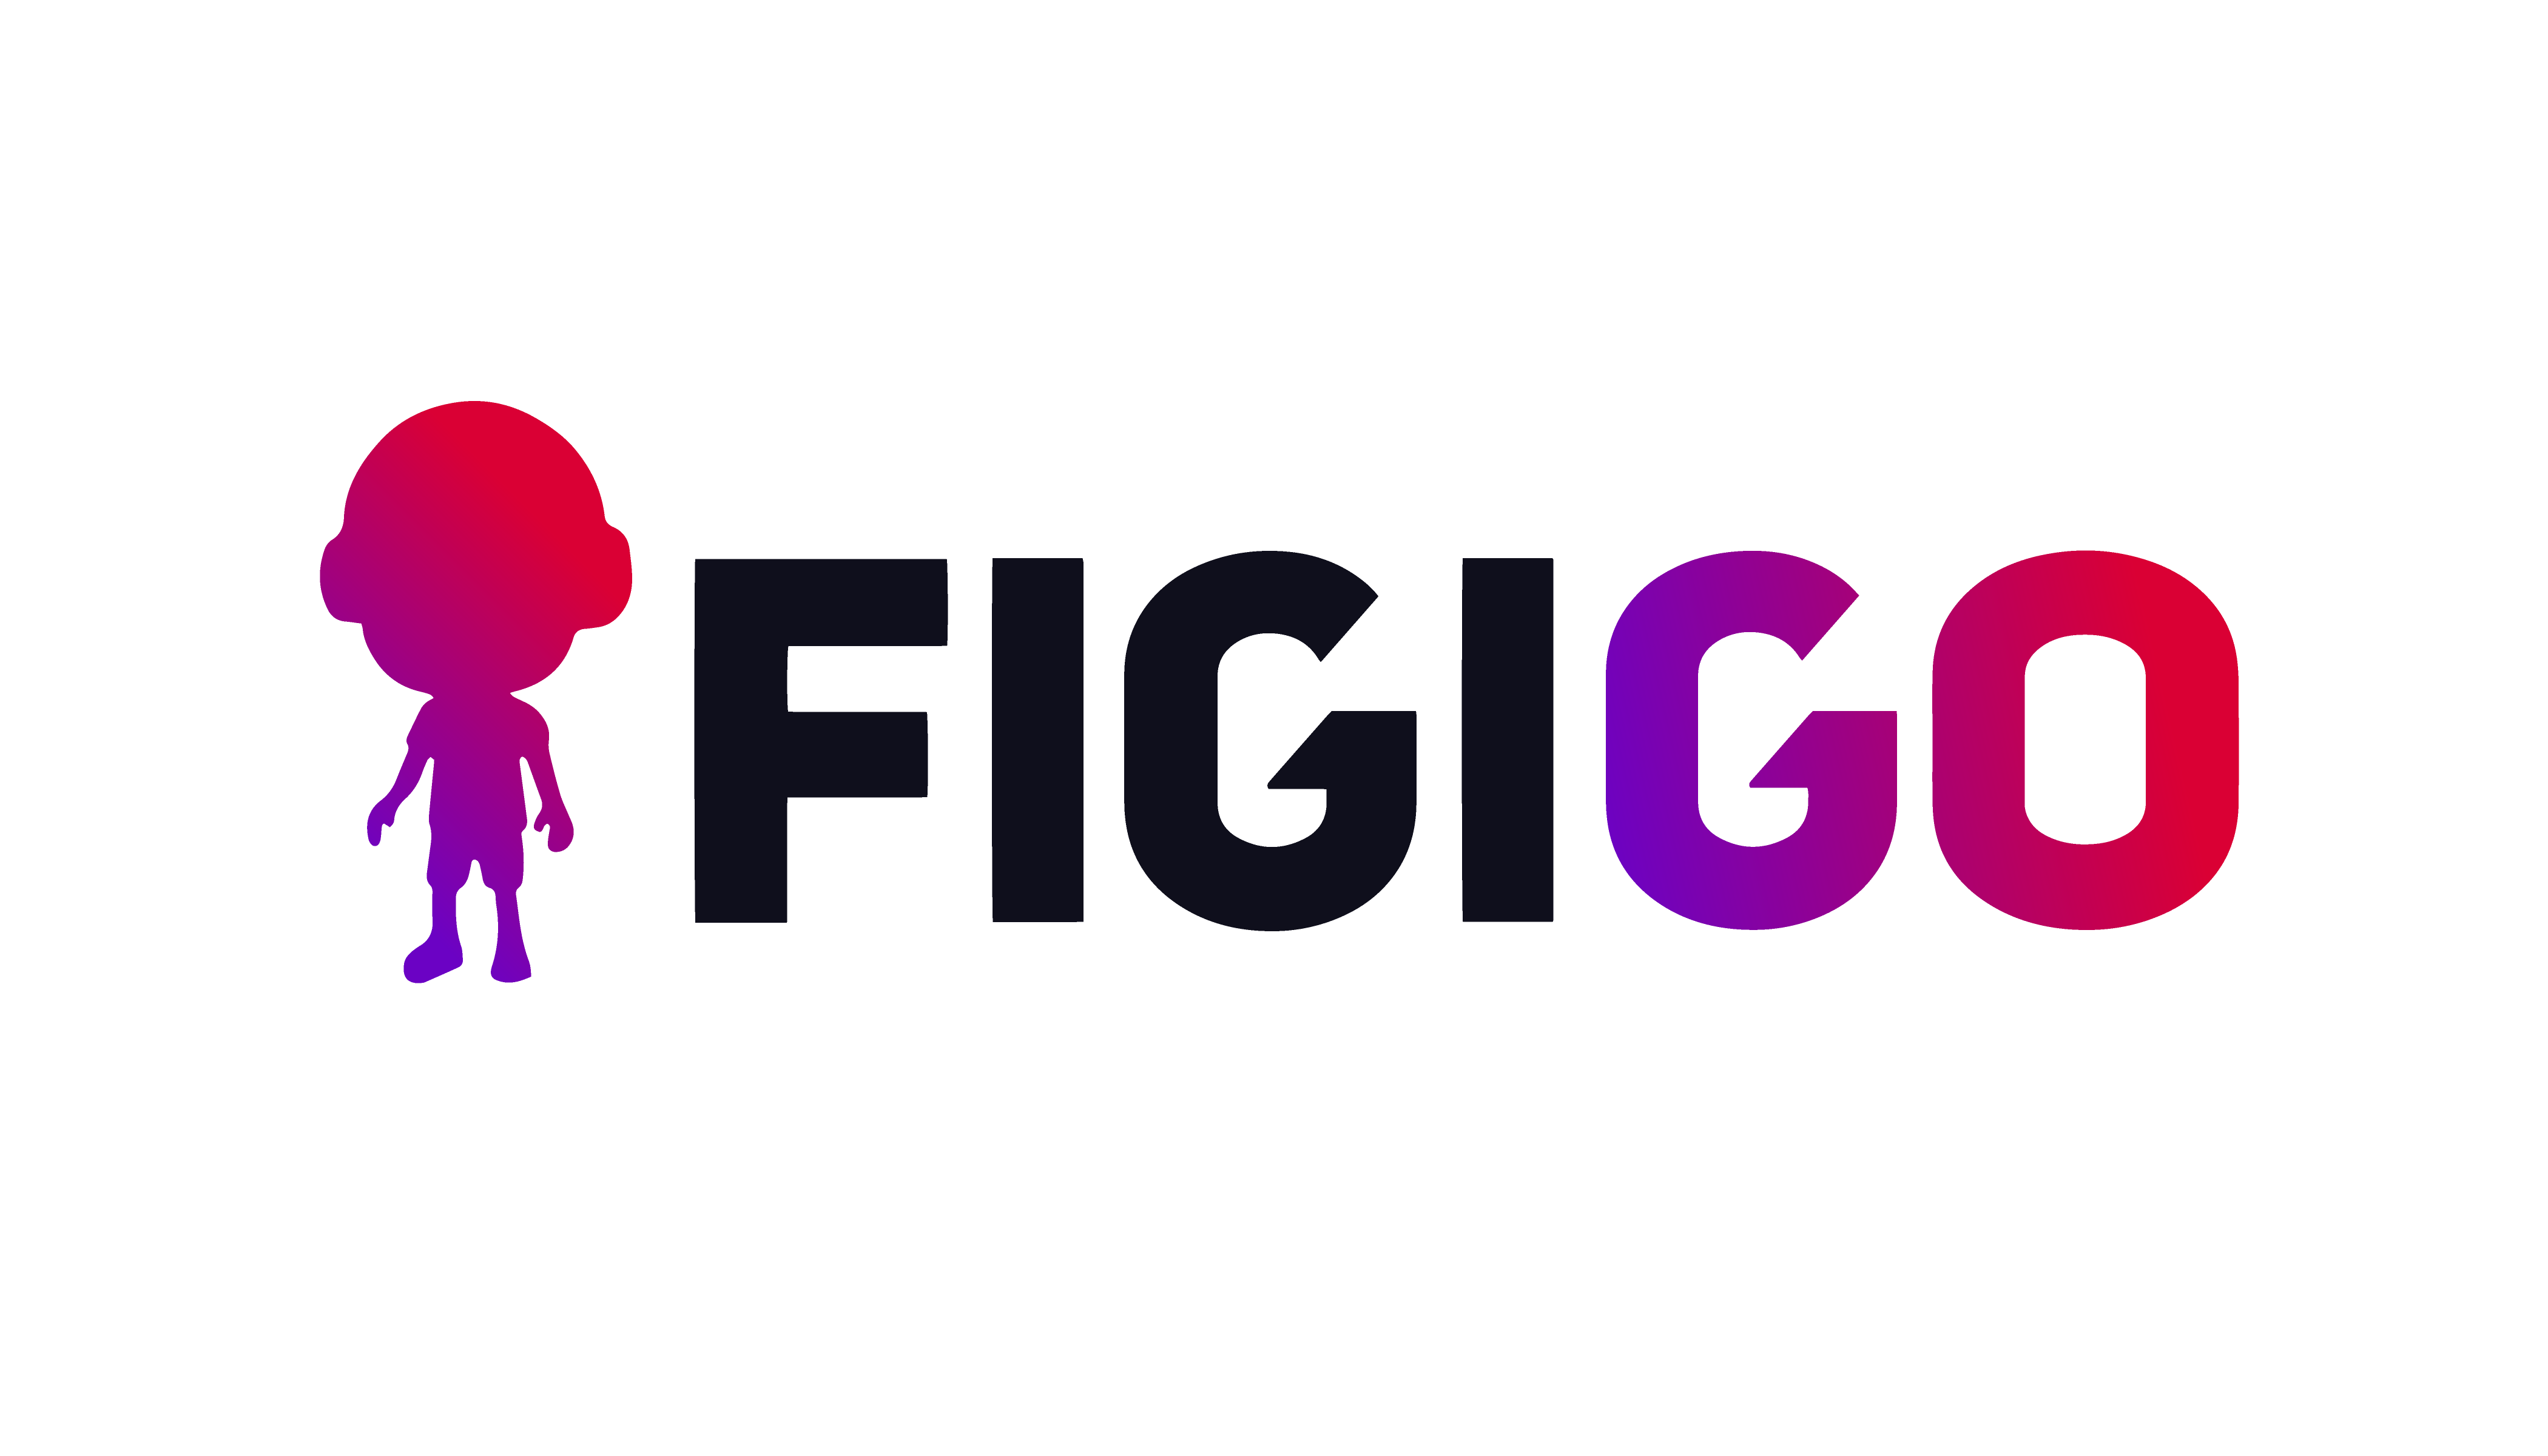 FigiGo